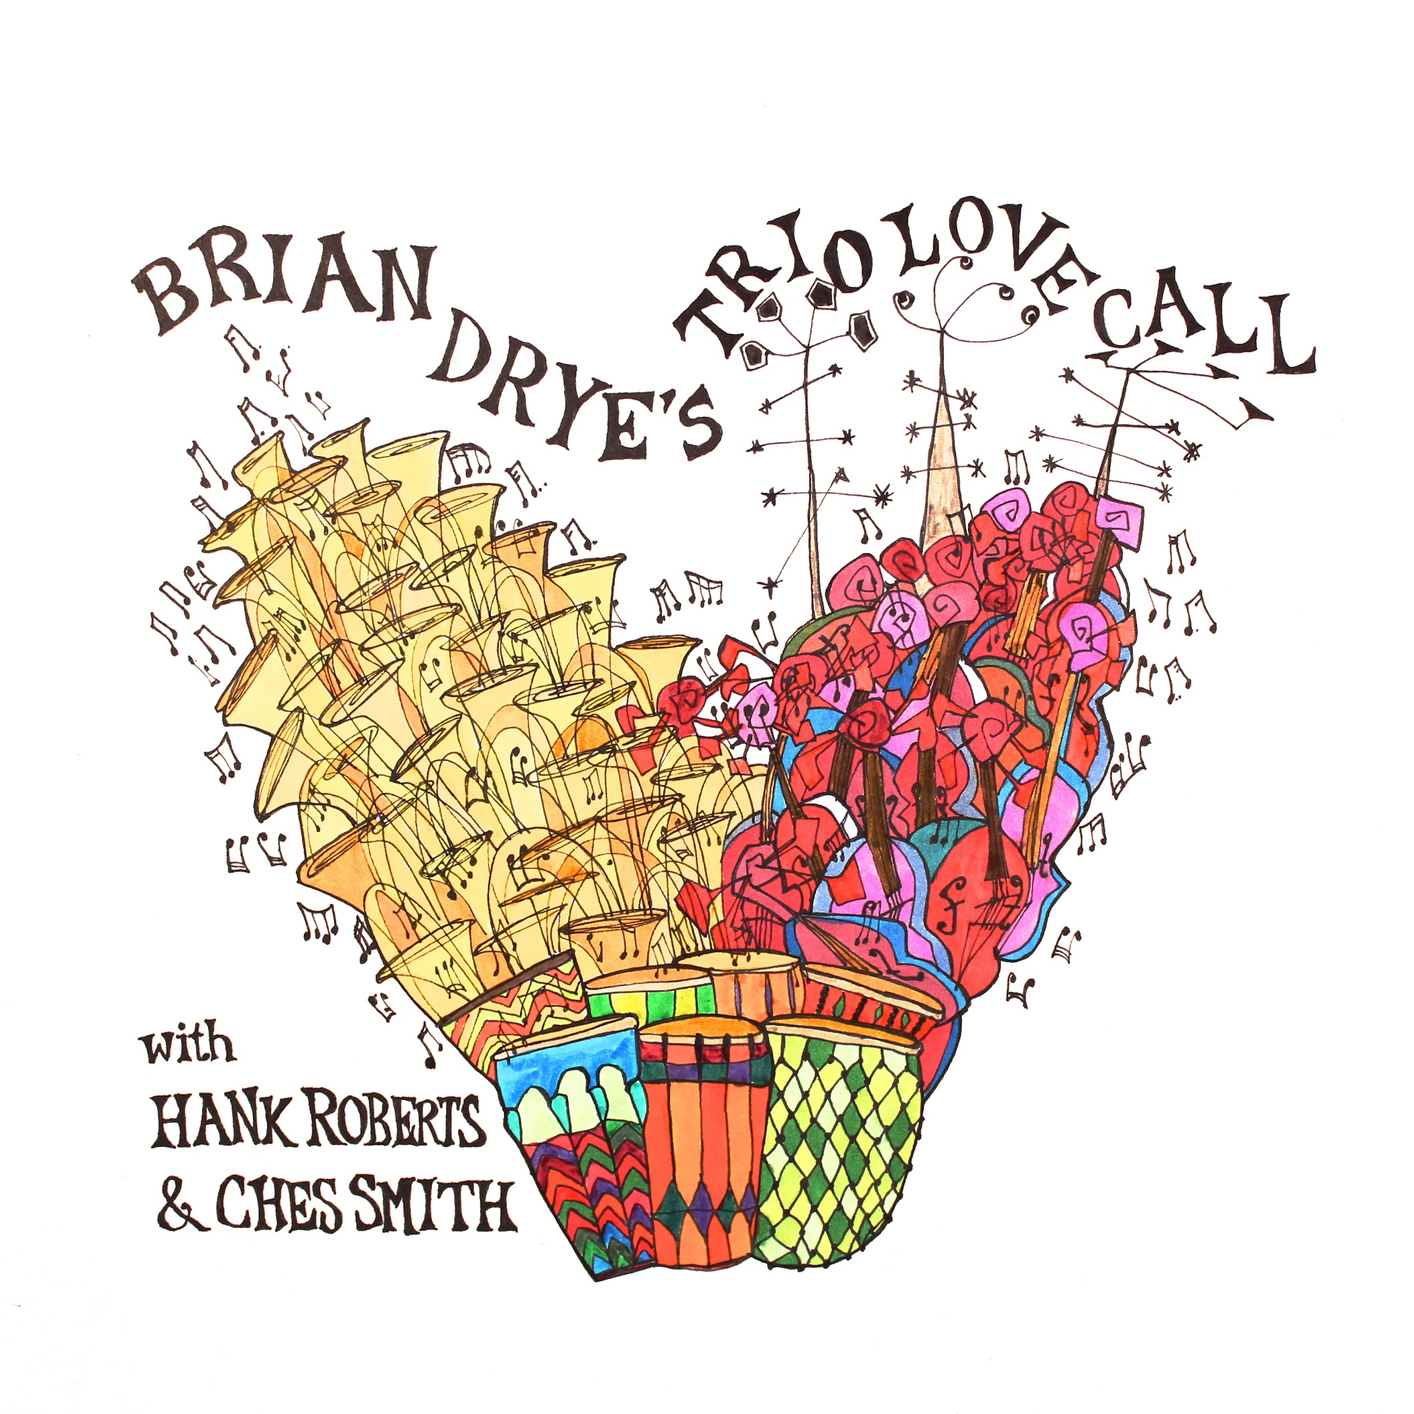 Brian Drye – Trio Love Call (2021) [FLAC 24bit/44,1kHz]